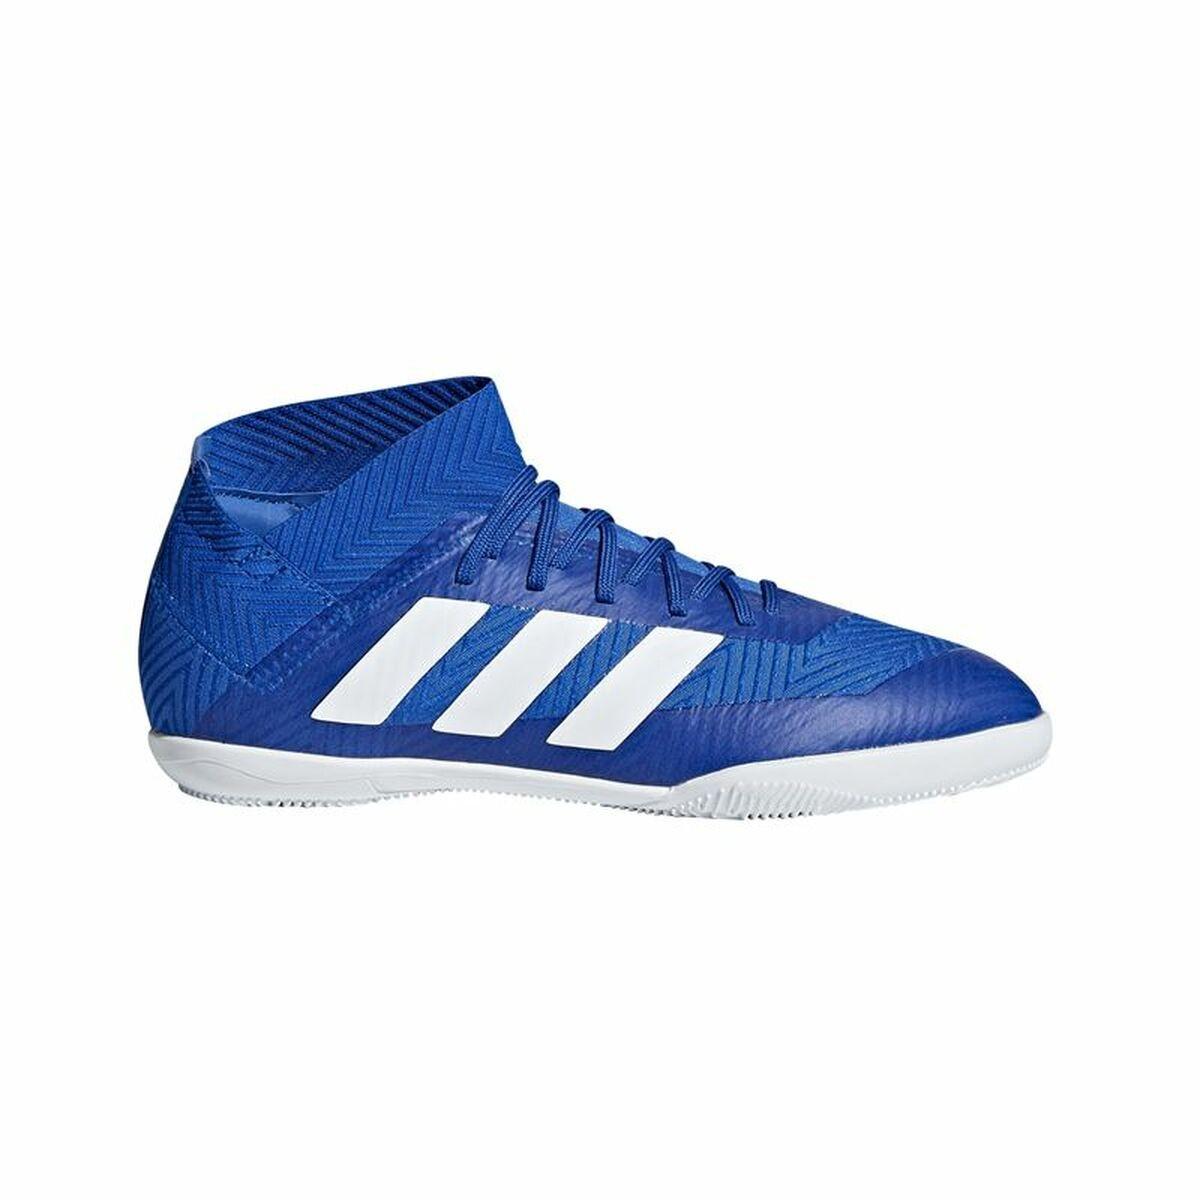 Køb Indendørs fodboldstøvler til Adidas Tango 18.3 30 fra boligcenter.dk